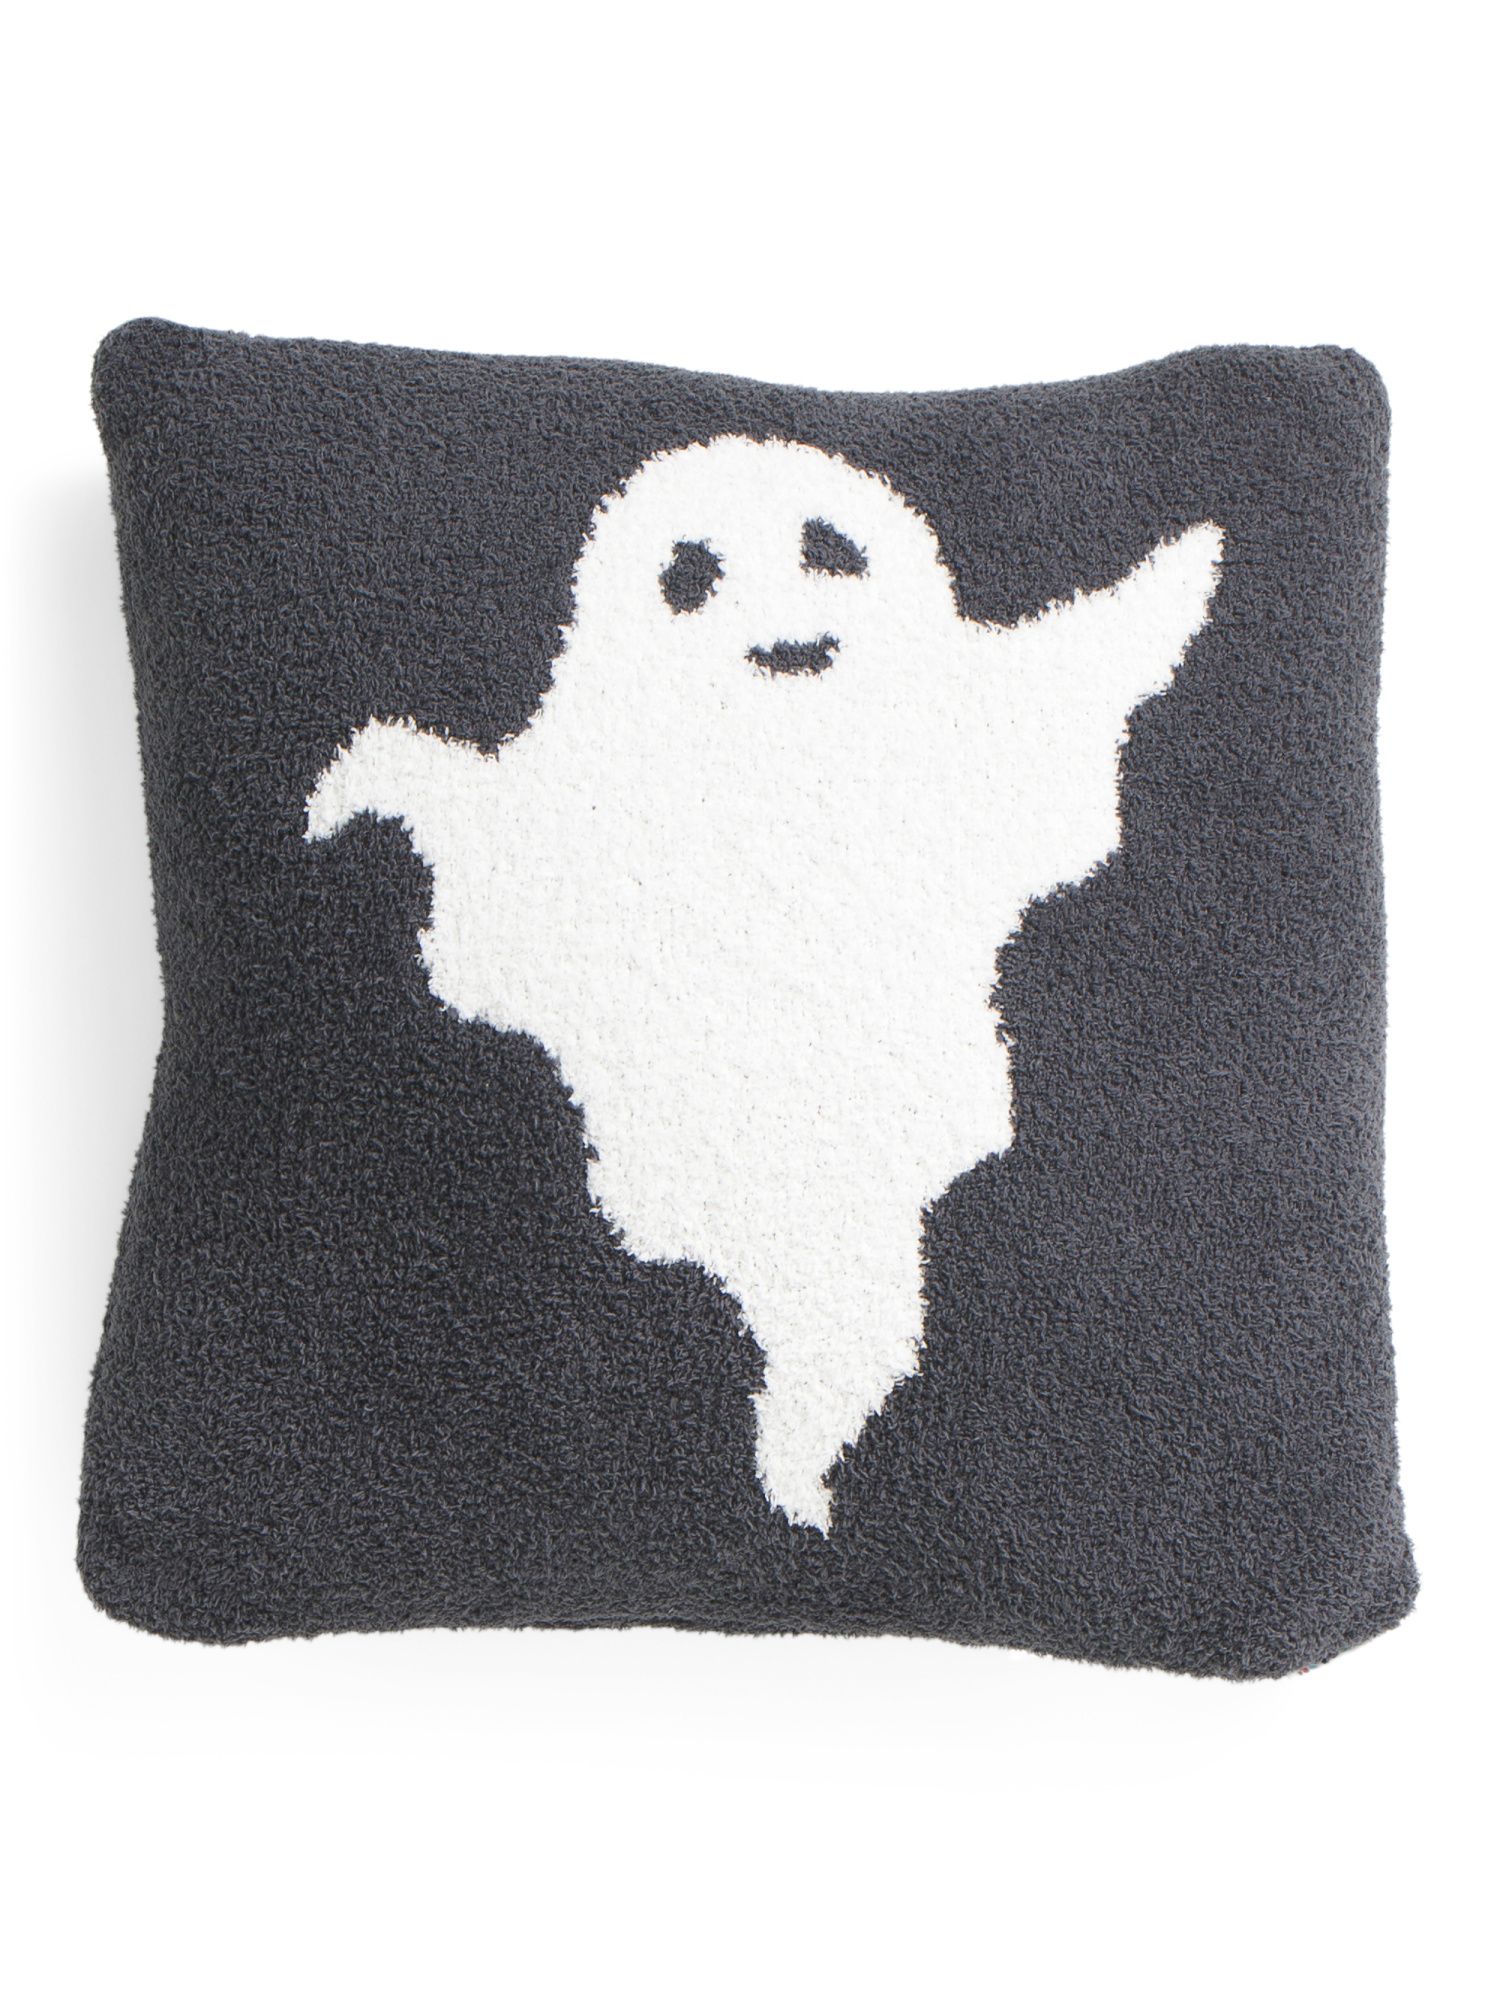 20x20 Knit Yarn Ghost Pillow | TJ Maxx